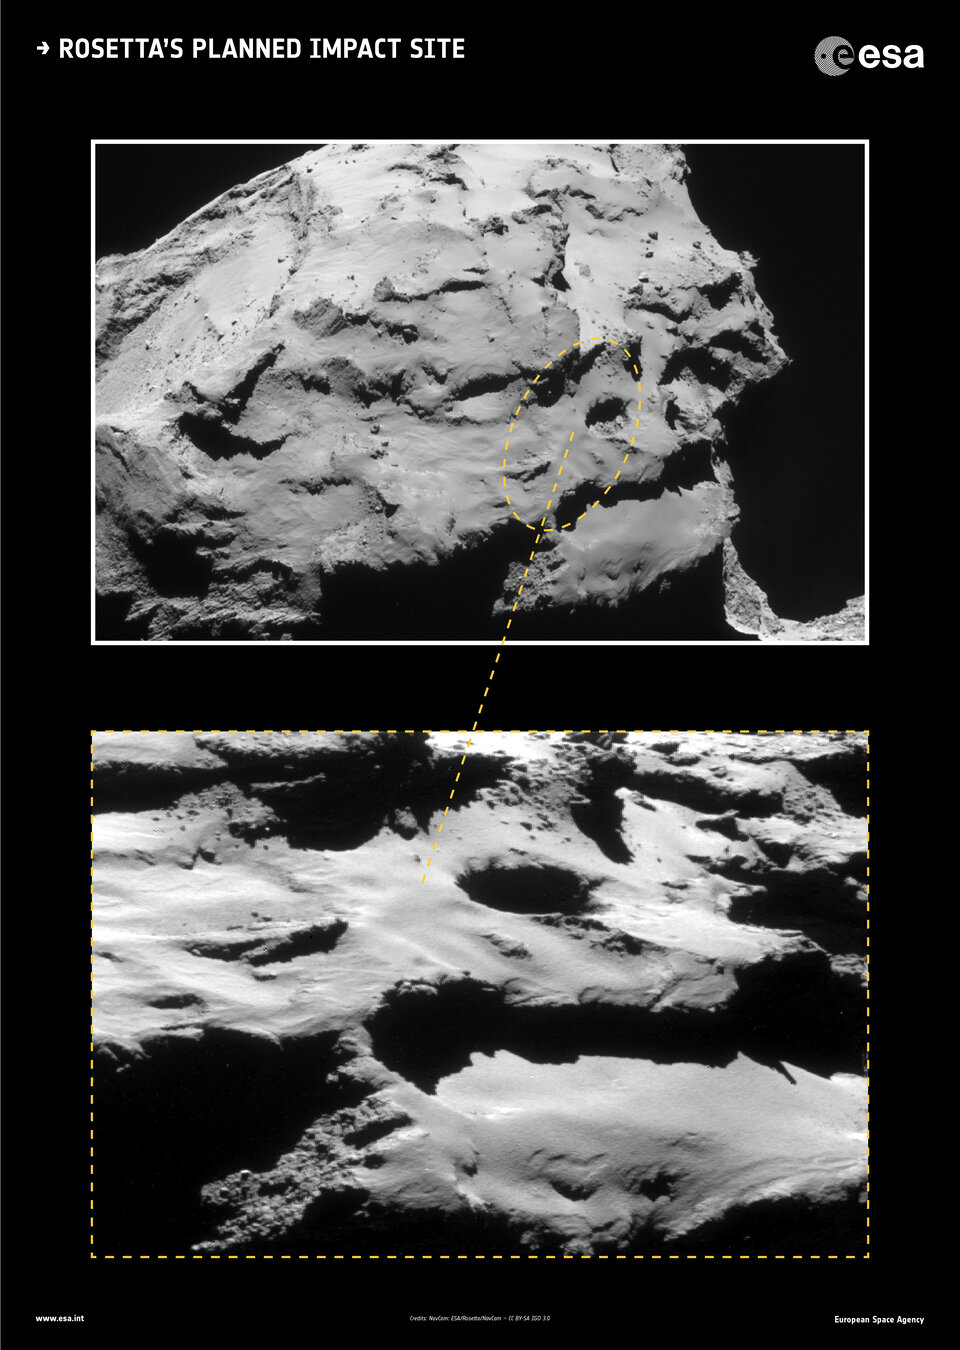 Der geplante Aufschlagspunkt von Rosetta 